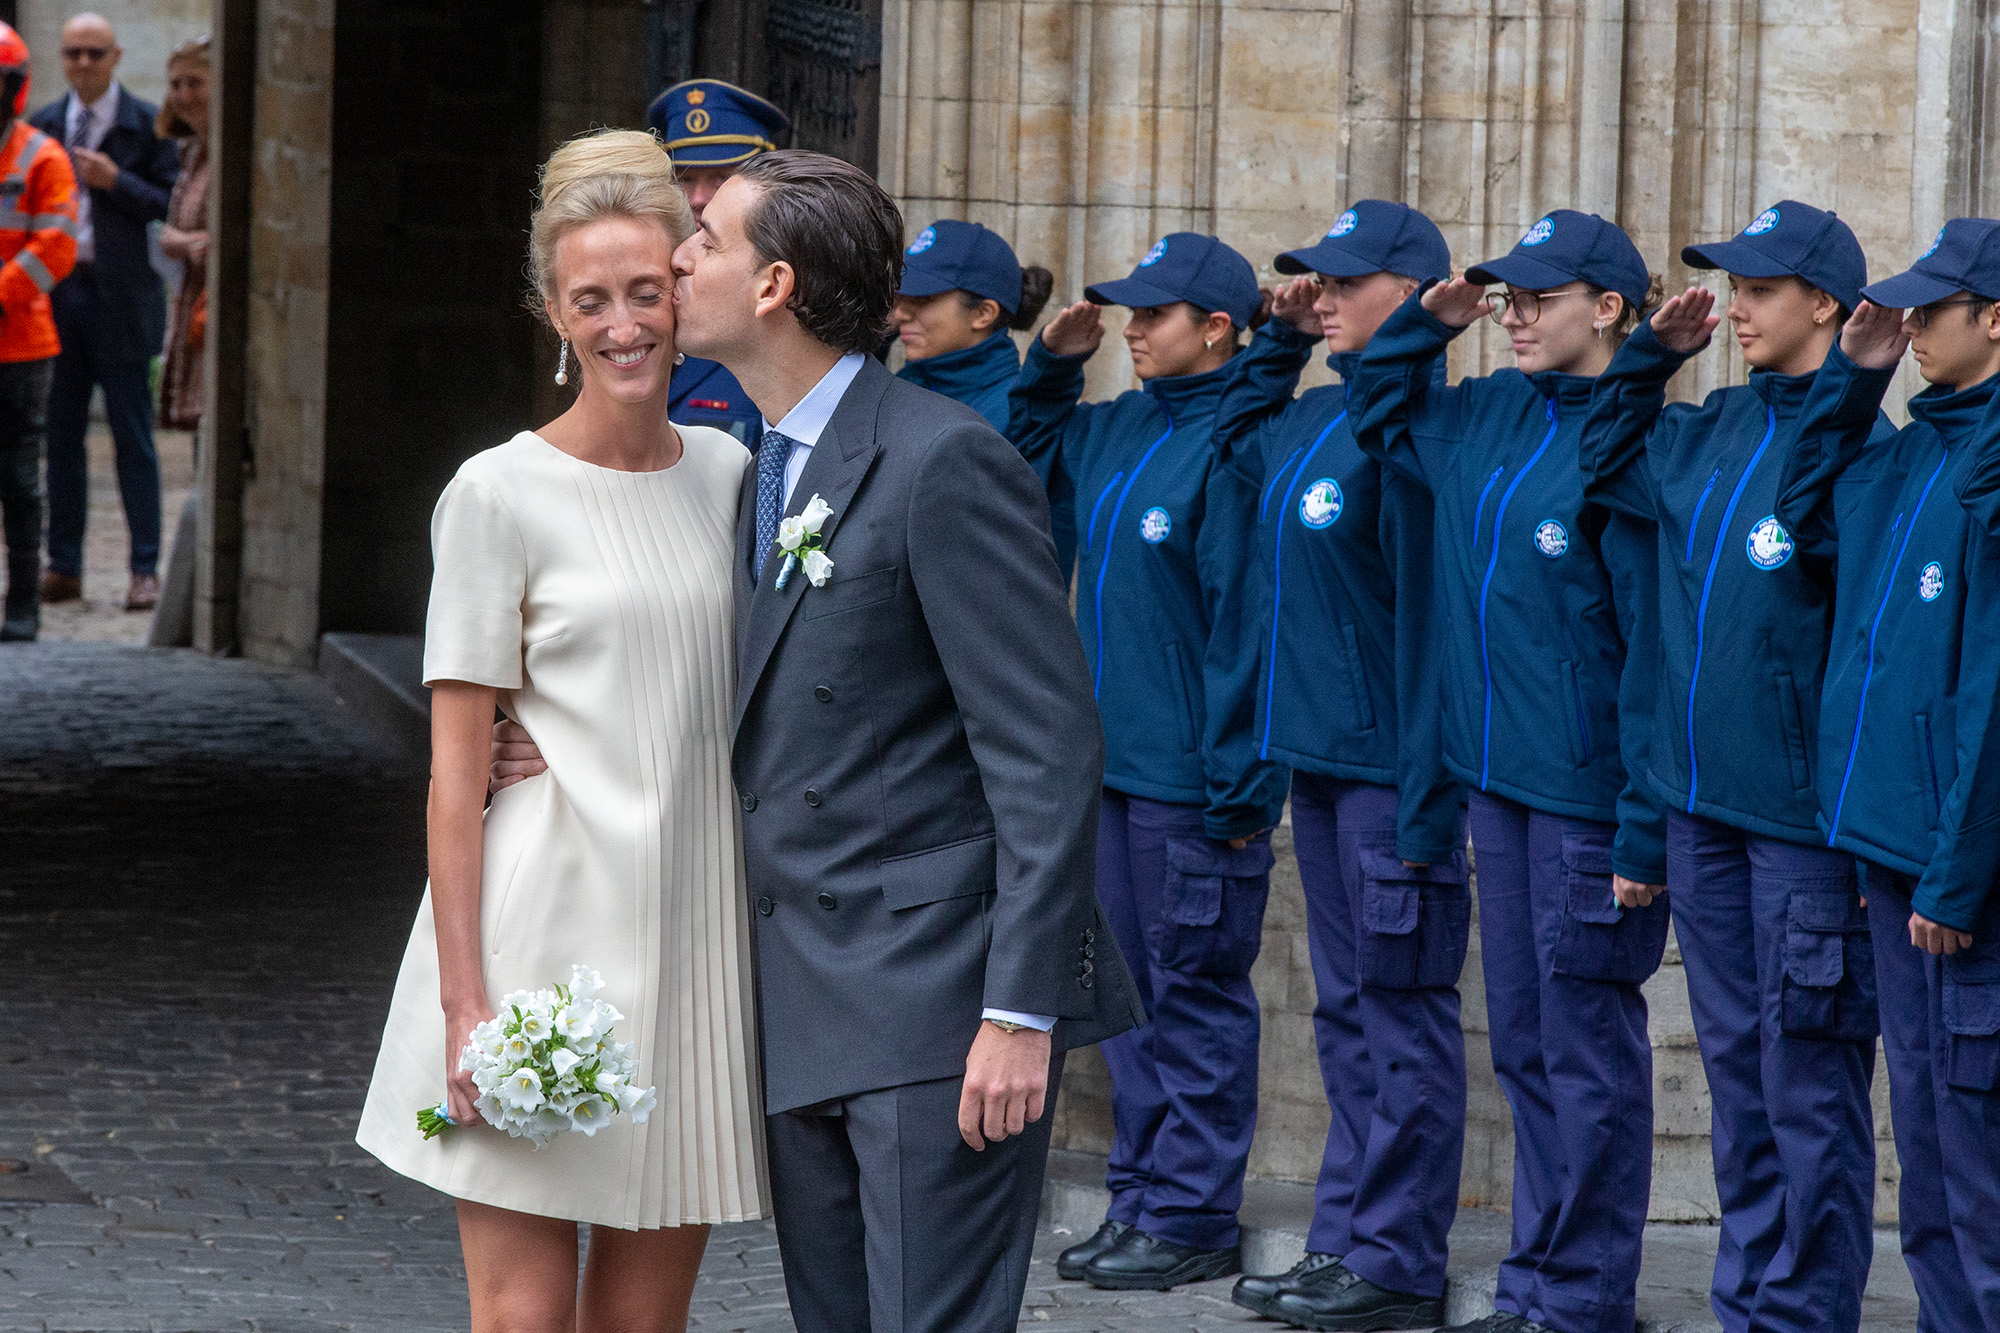 Maria Laura und William Isvy haben geheiratet (Bild: Nicolas Maeterlinck/Belga)